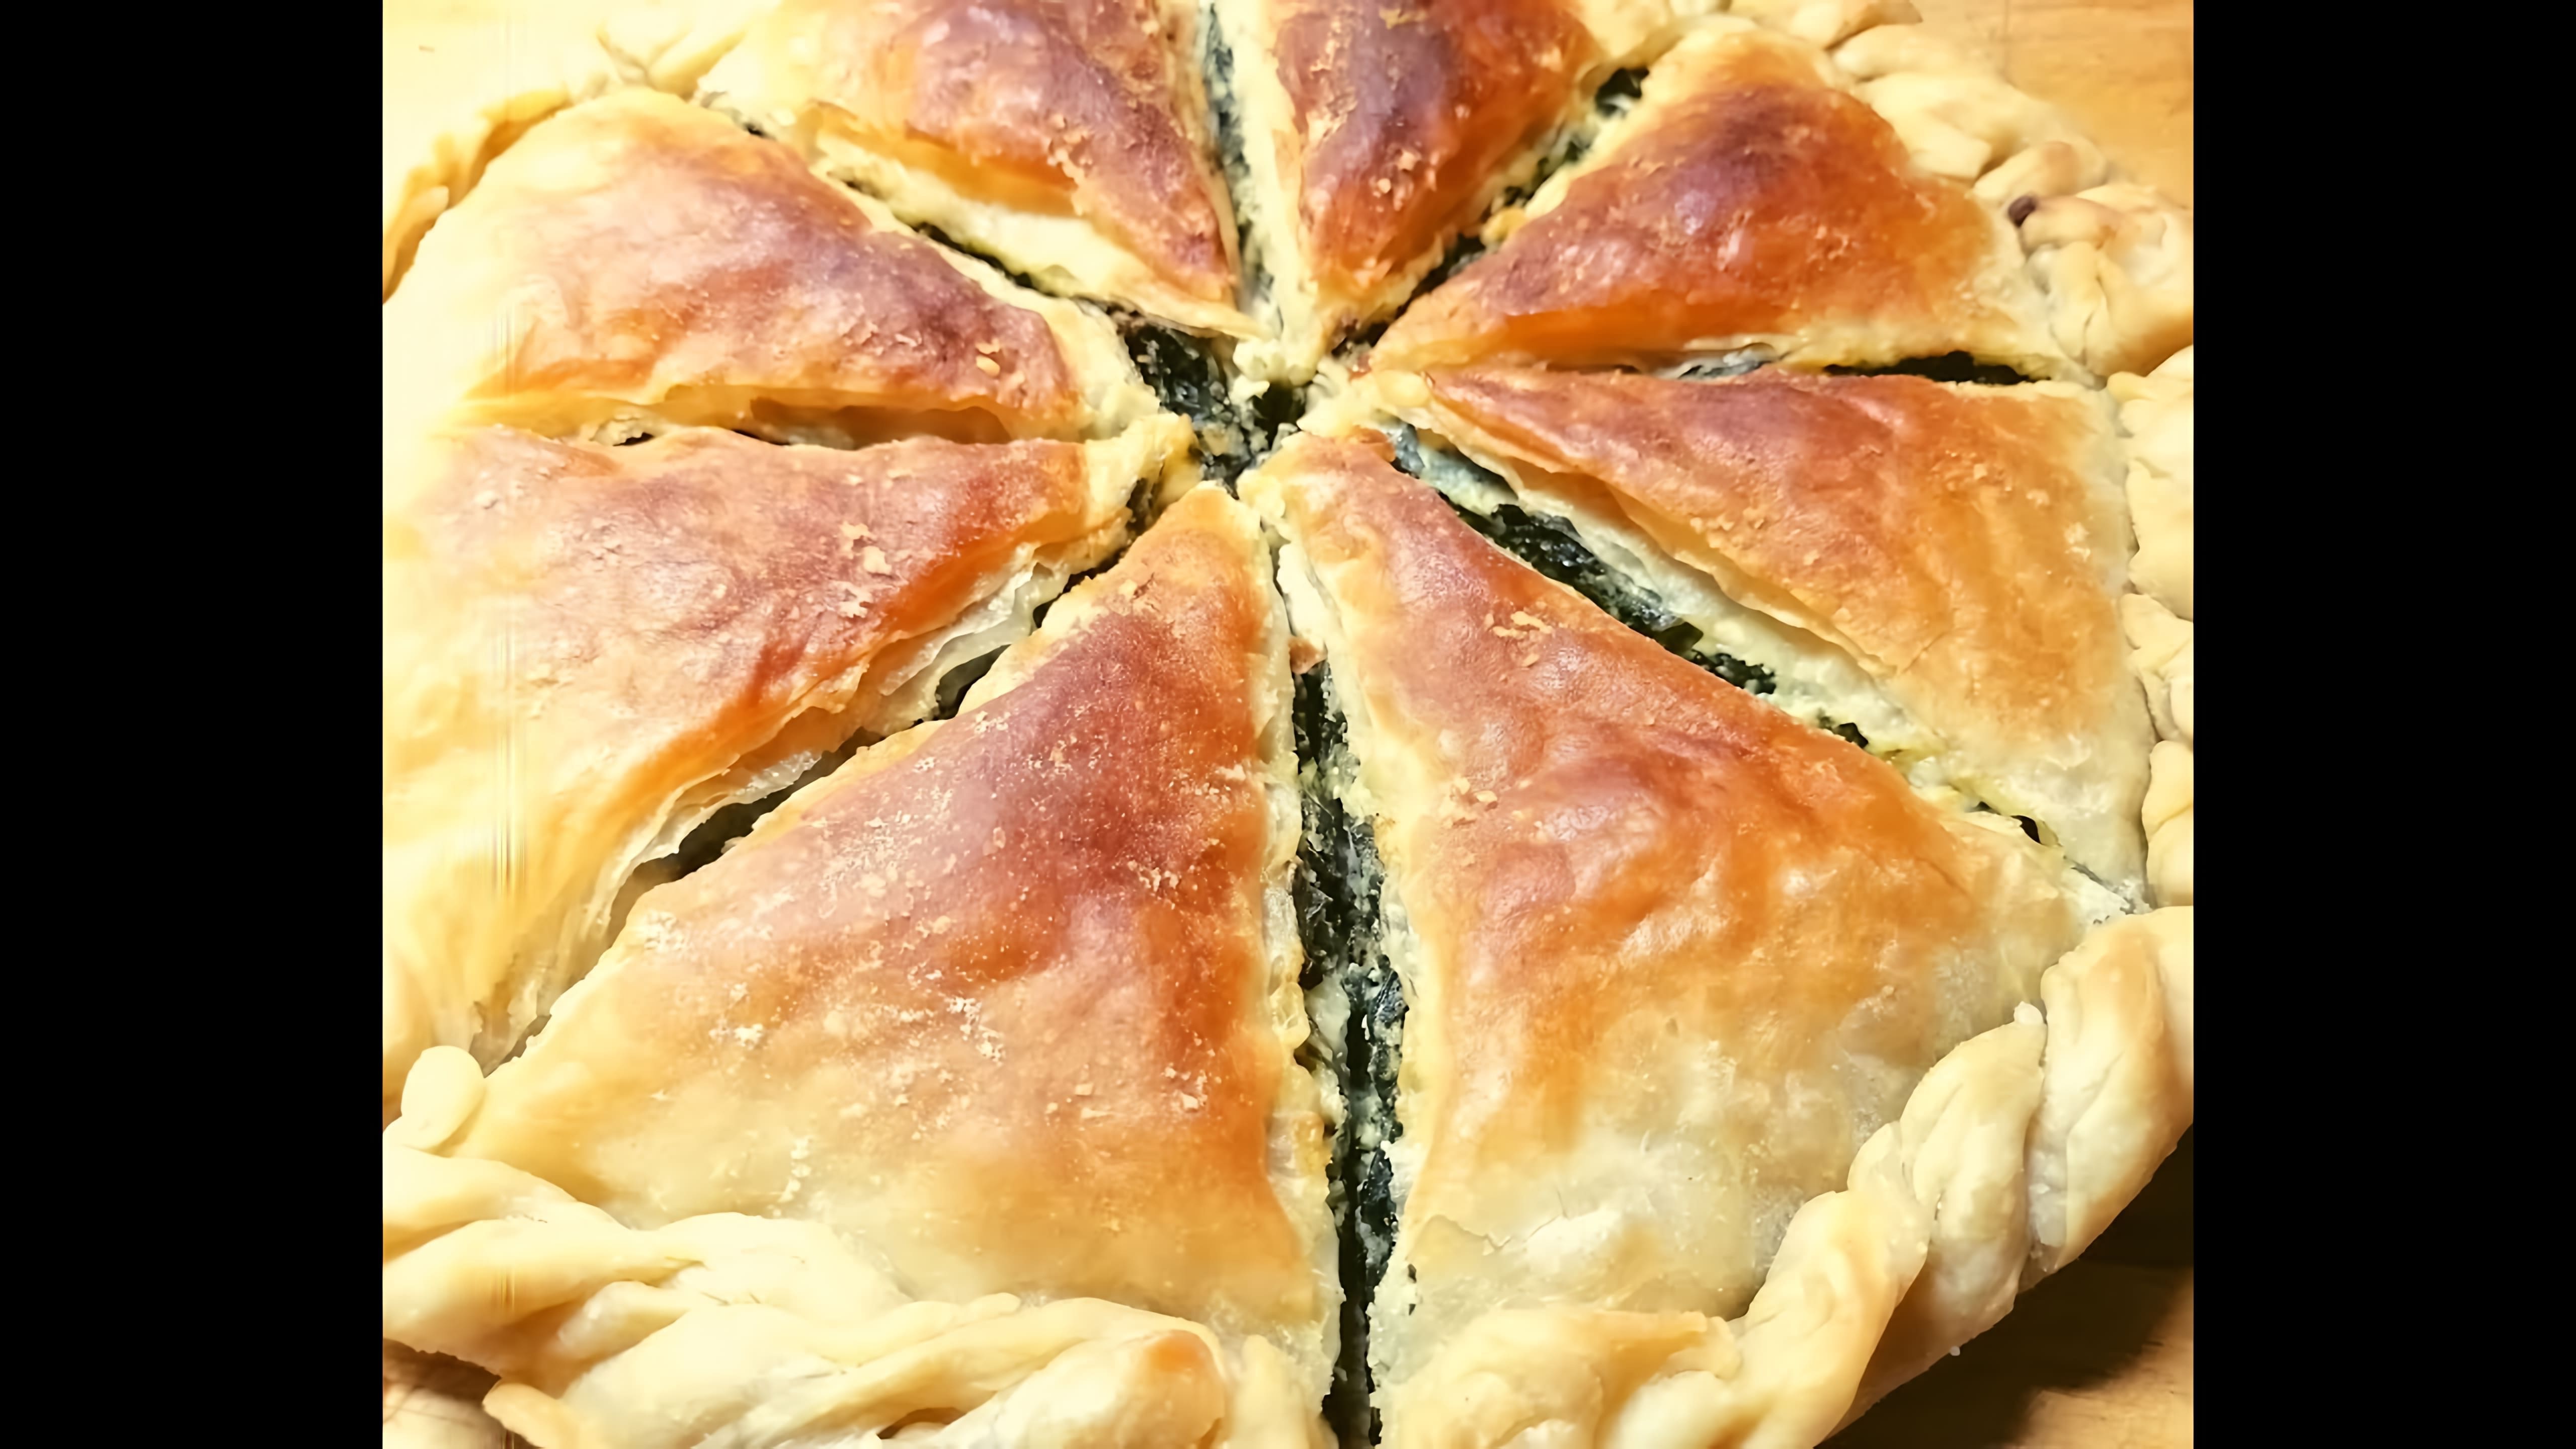 В этом видео демонстрируется рецепт приготовления греческого слоеного пирога со шпинатом и сыром фета